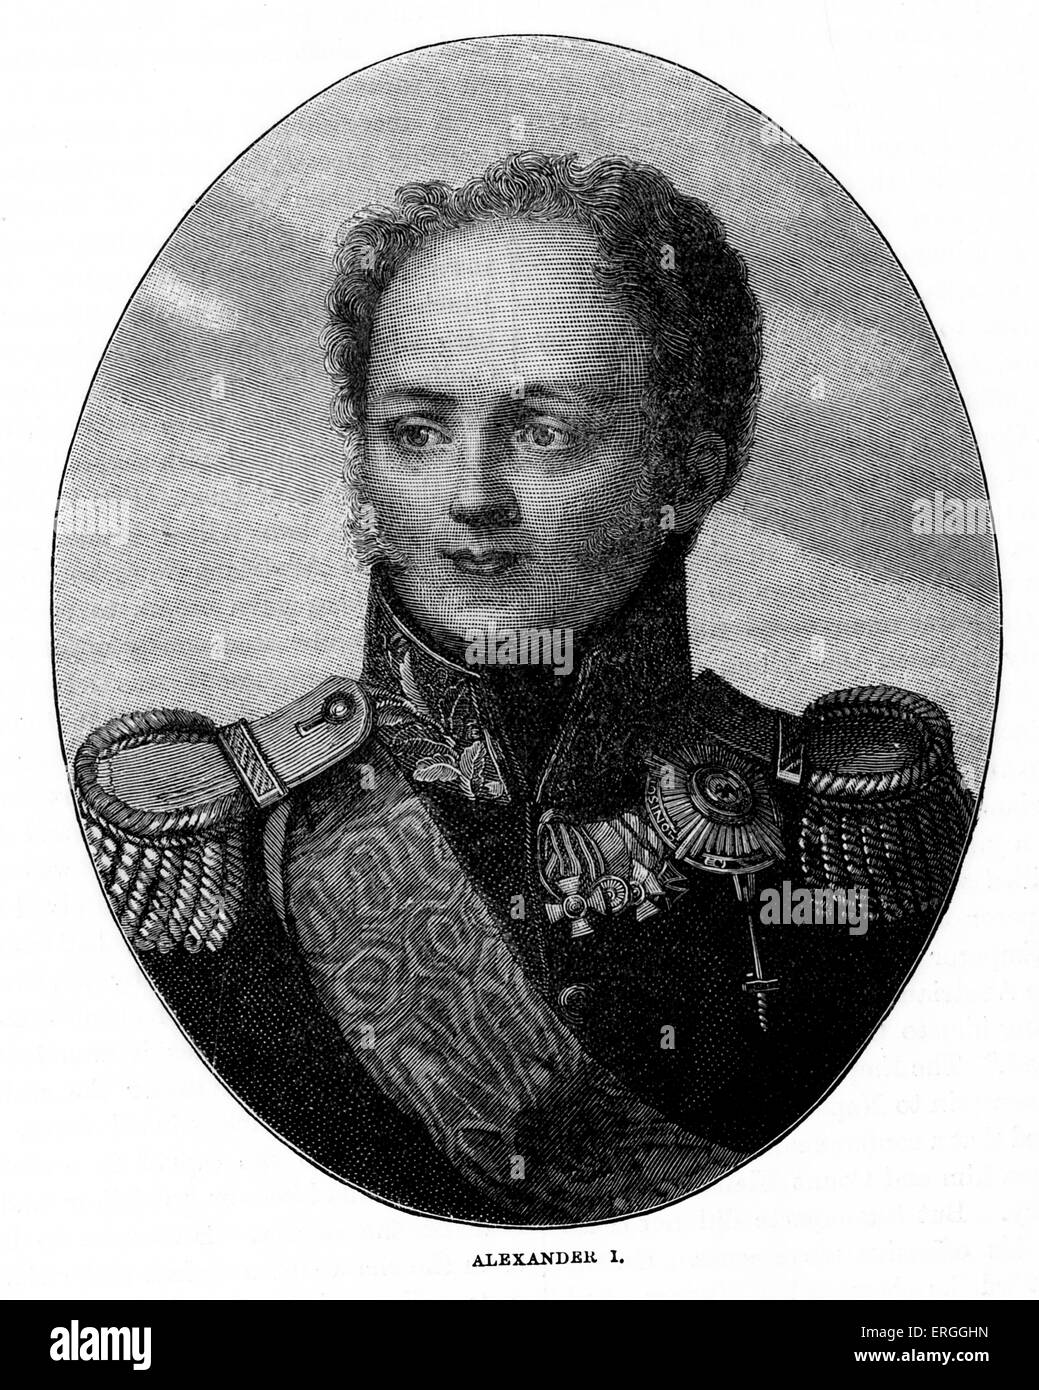 Alessandro I di Russia - ritratto. L'imperatore di Russia dal 23 marzo 1801 al 1 dicembre 1825 eprimi russo re di Polonia da Foto Stock